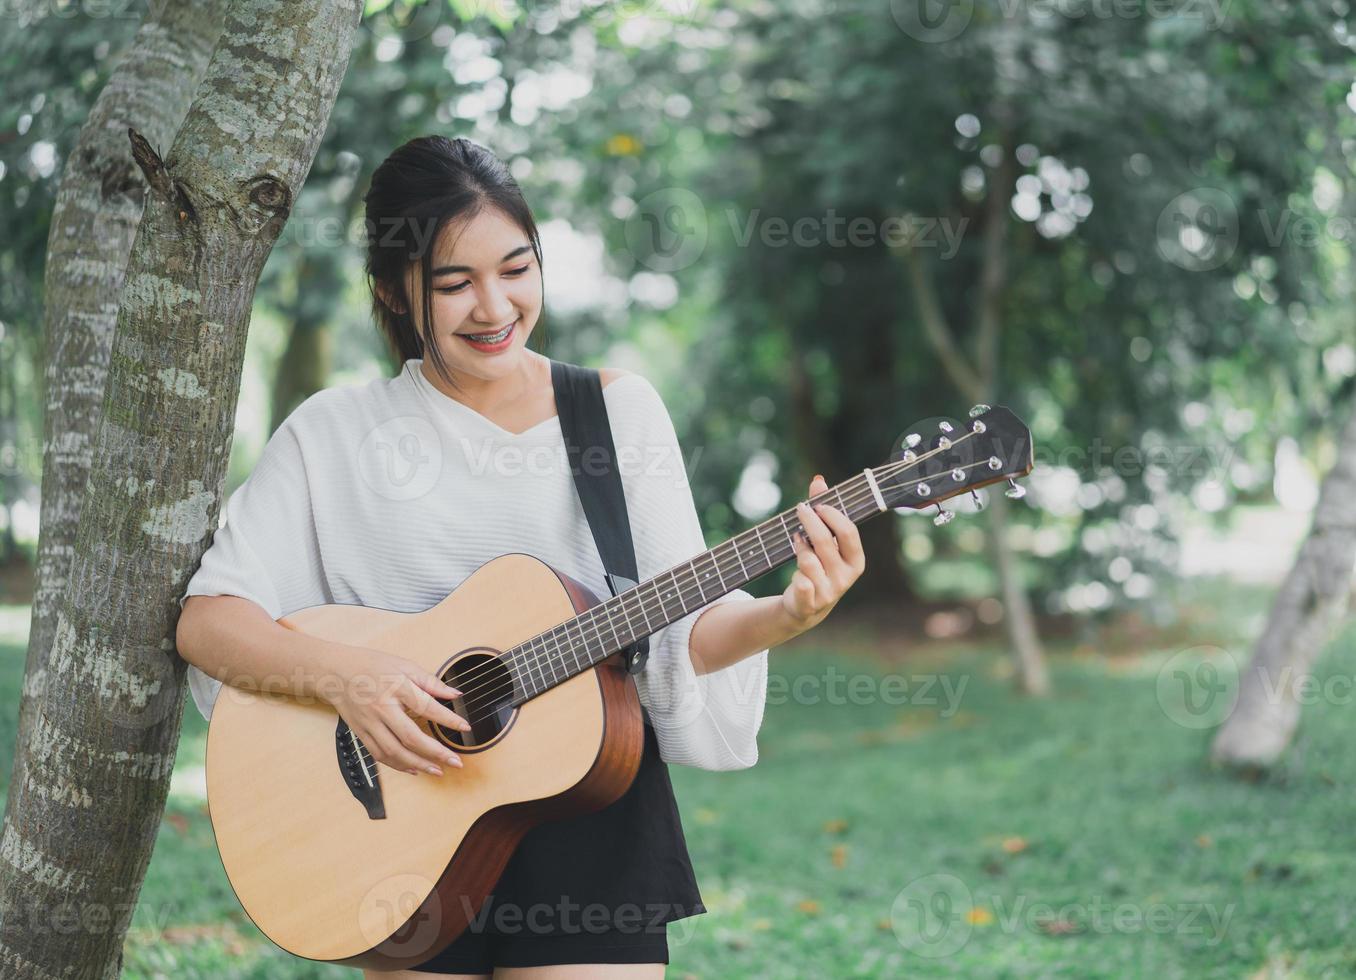 Aziatische jonge vrouw die gitaar speelt en muziek zingt in het park, Aziatische vrouw die gitaar speelt in de tuin foto